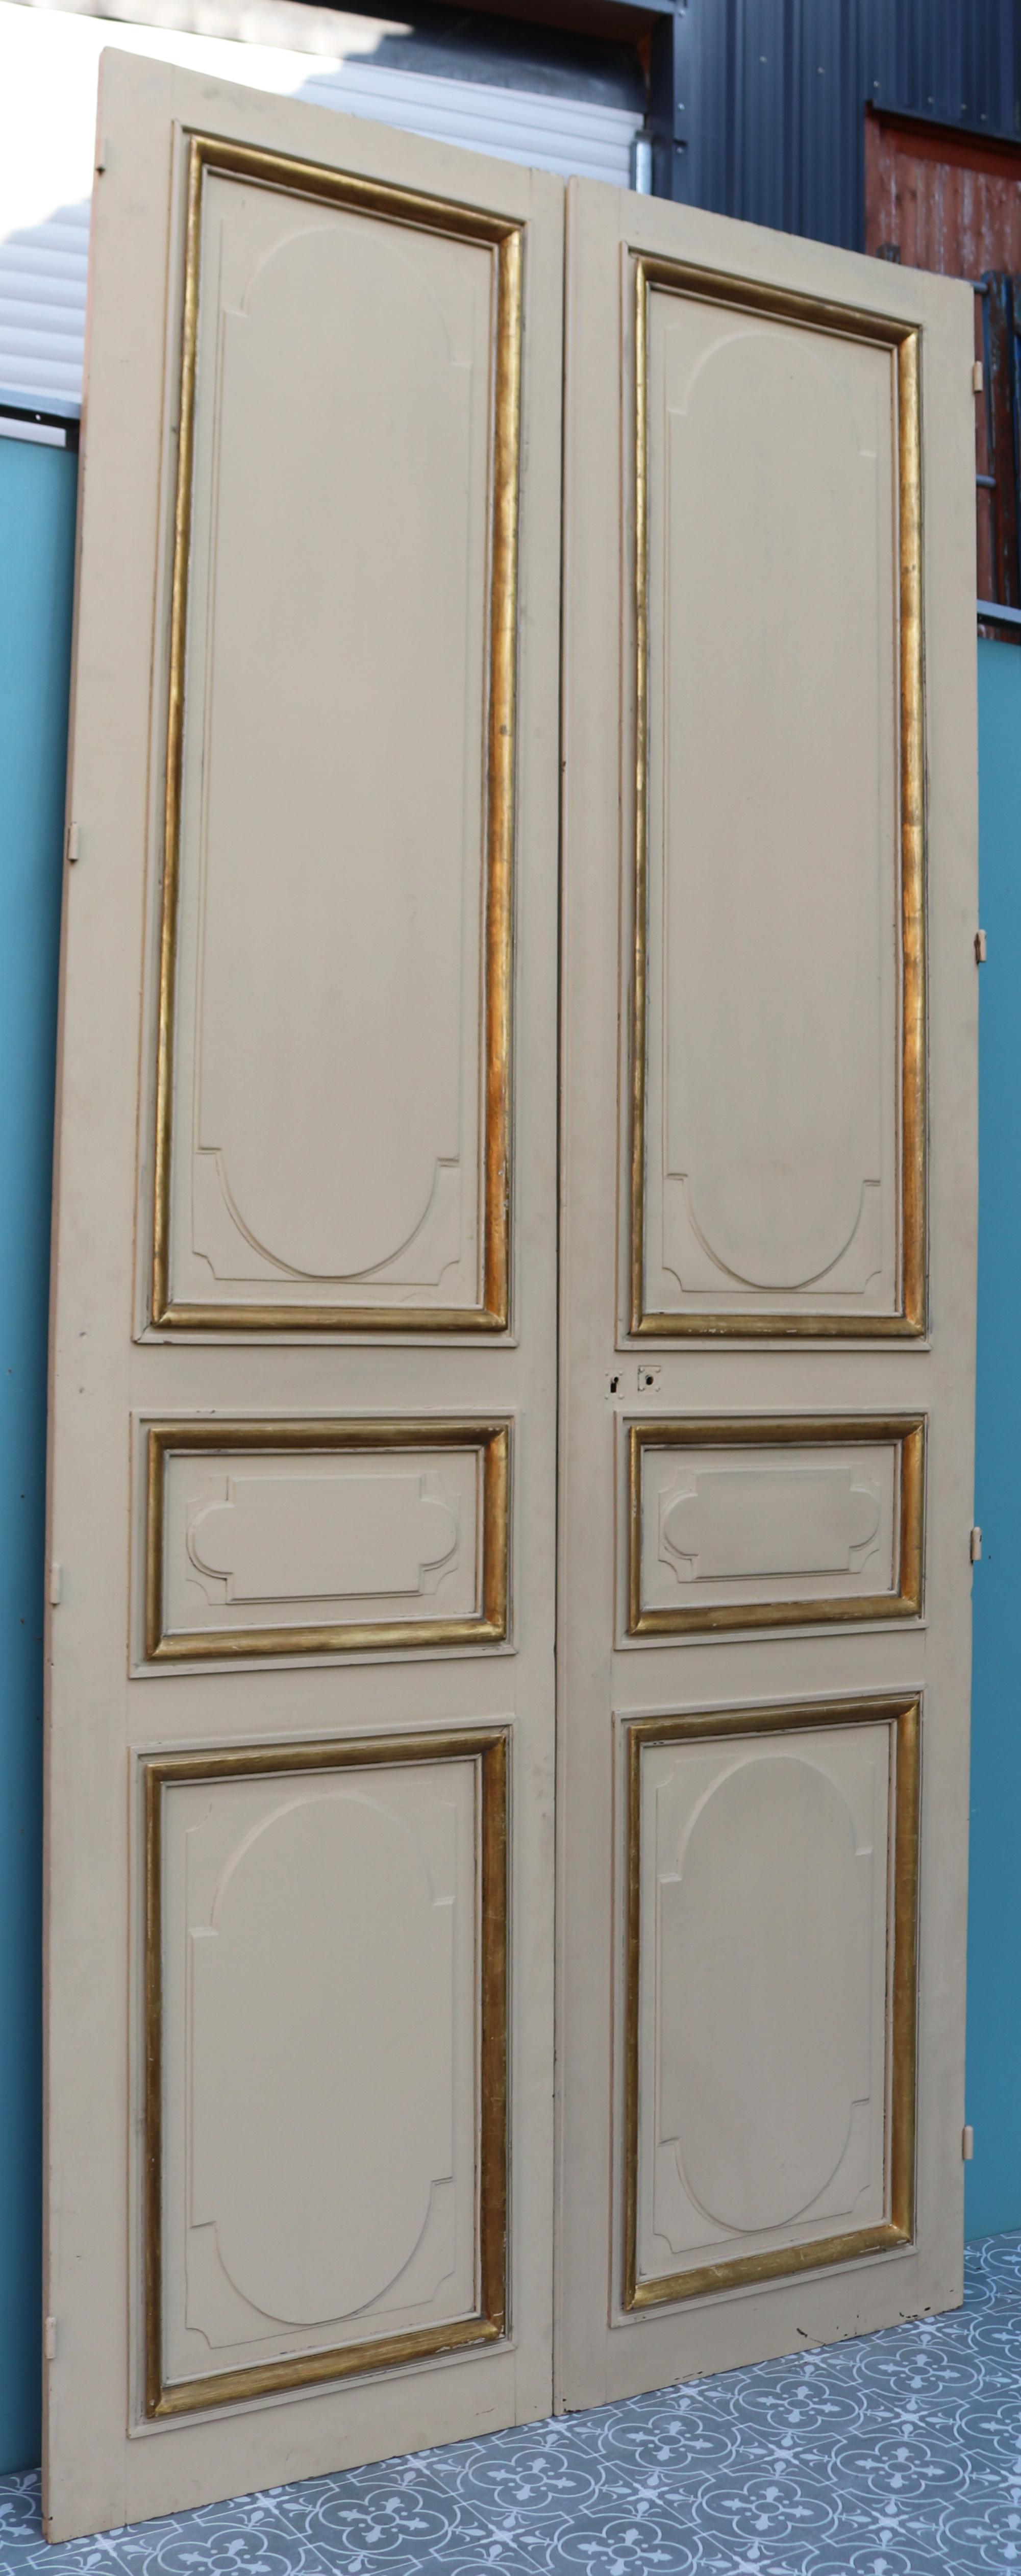 Eine Reihe von Kieferntüren, die in einer Pilzfarbe gestrichen sind, mit profilierten Leisten. Diese Türen wurden aus einer Galerie in Surrey entnommen.